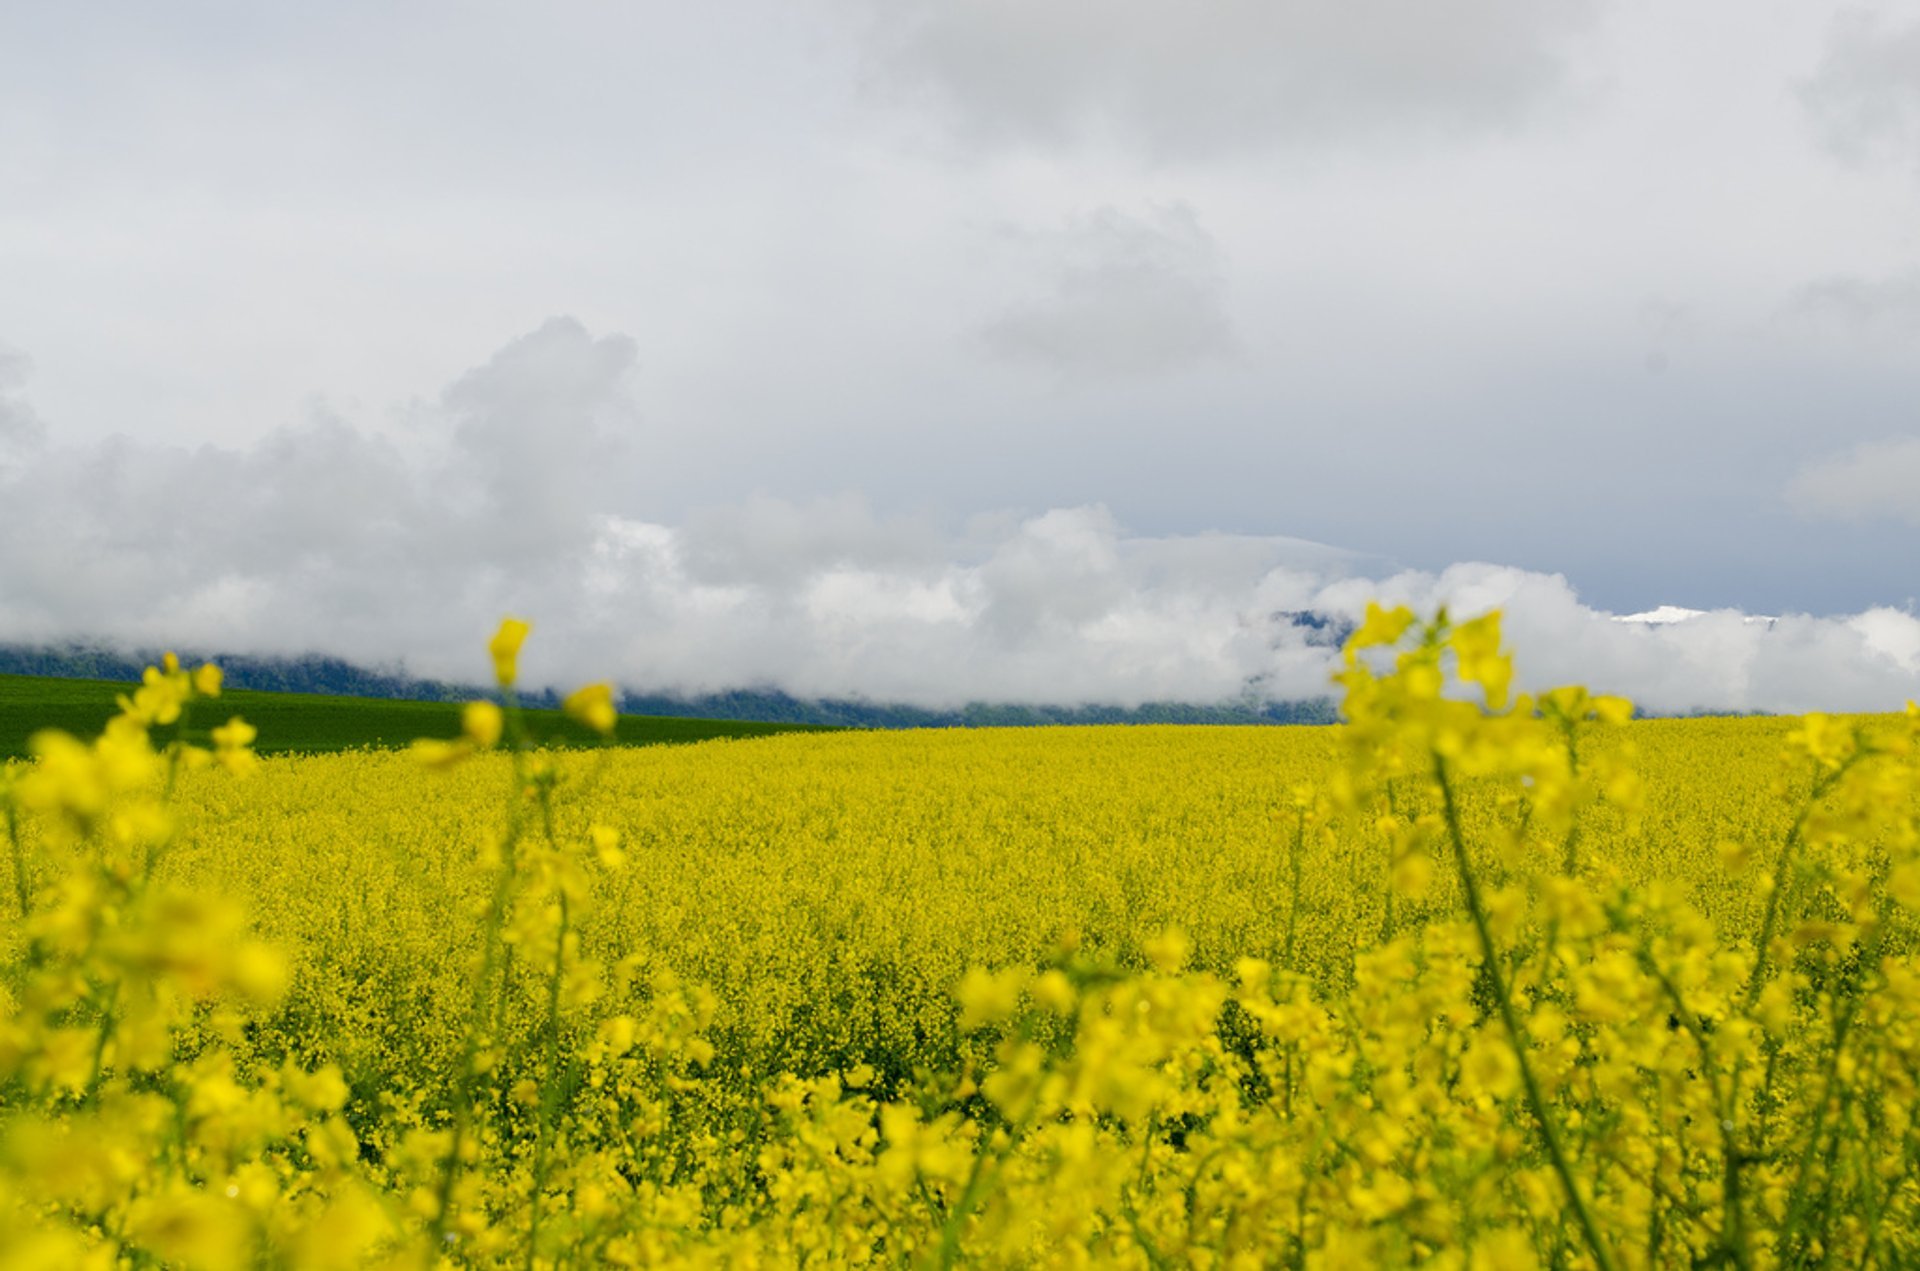 Mustard Fields in Bloom